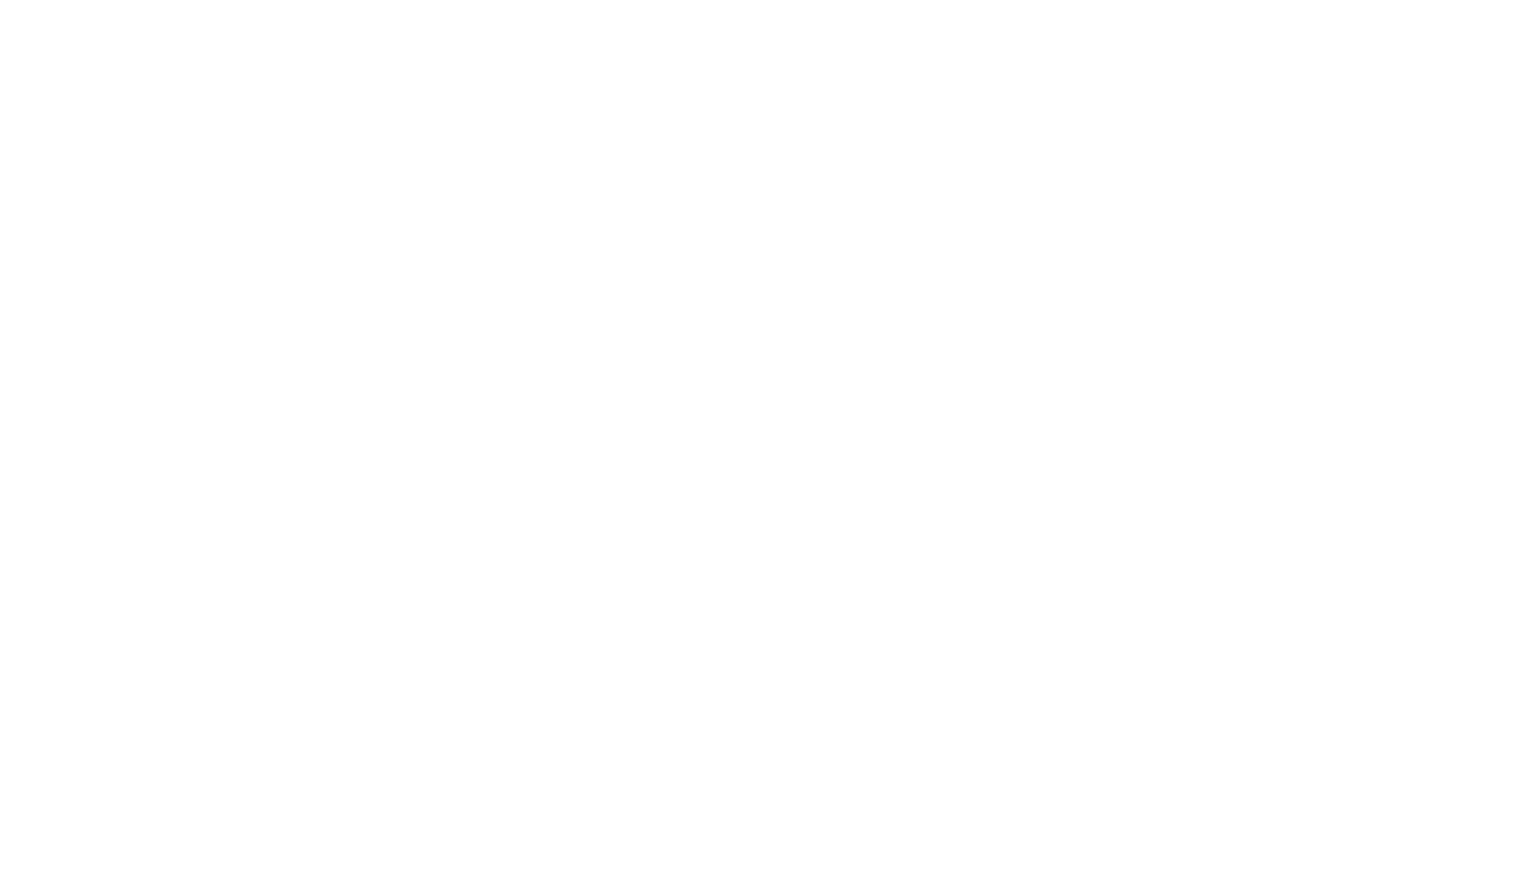 w magazine logo